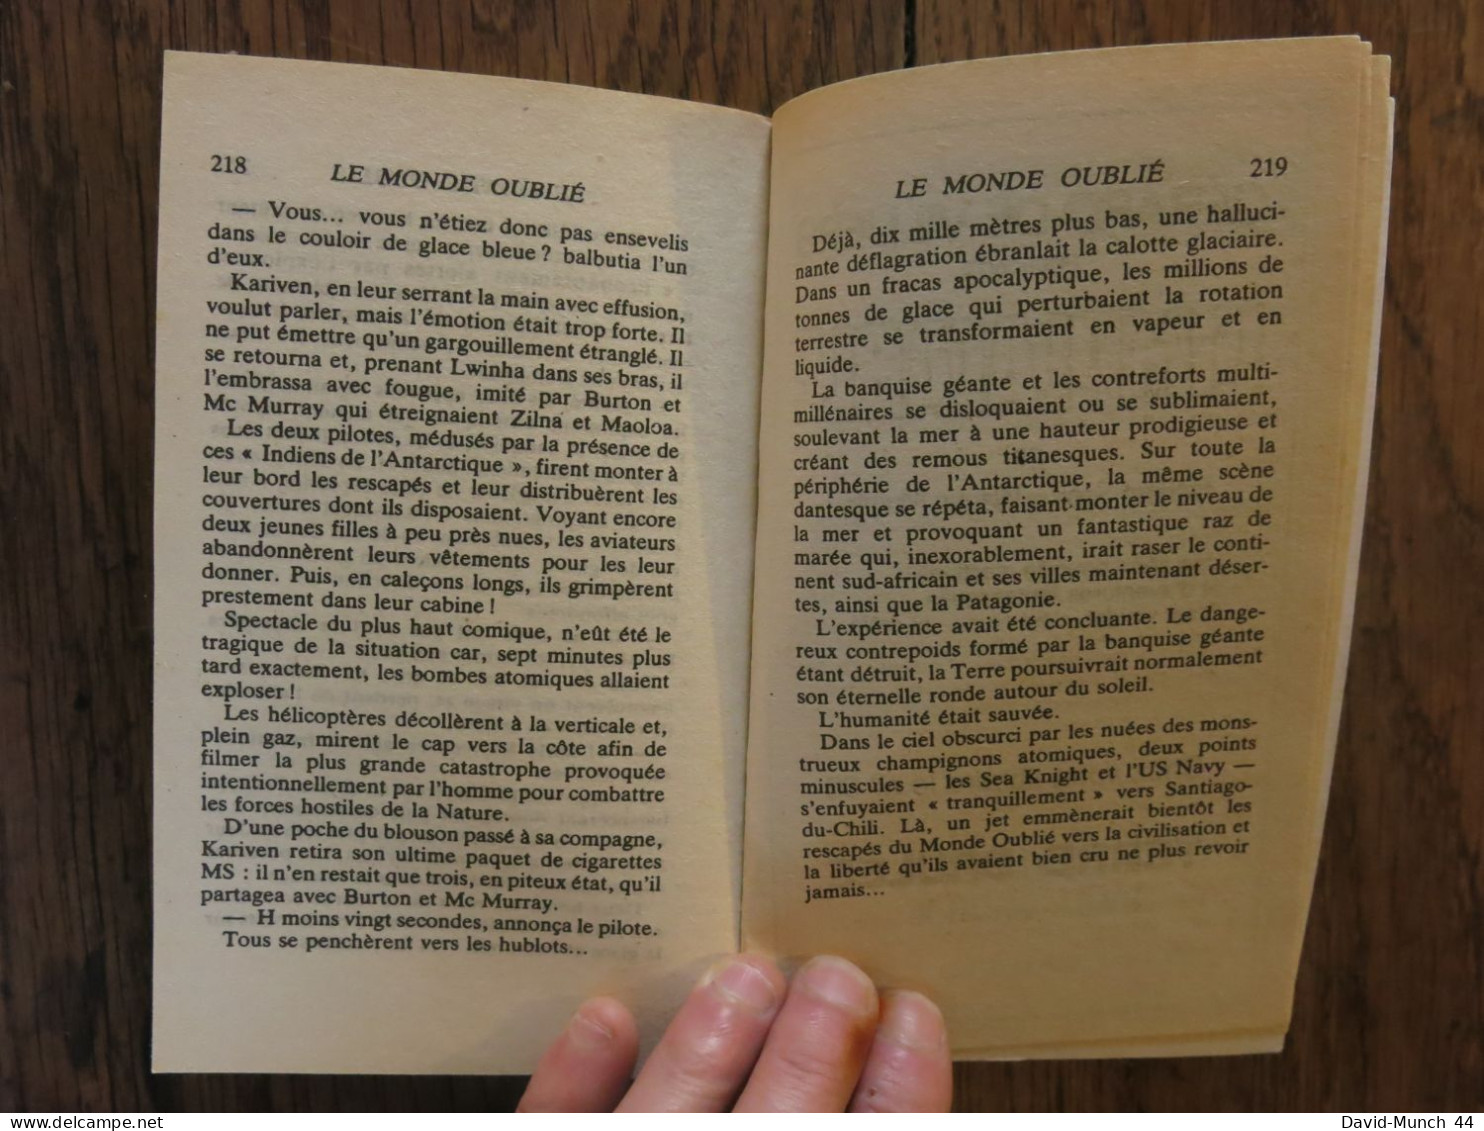 Le Monde oublié de Jimmy Guieu. Presses de la cité, Collection Science-fiction Jimmy Guieu n° 13. 1988